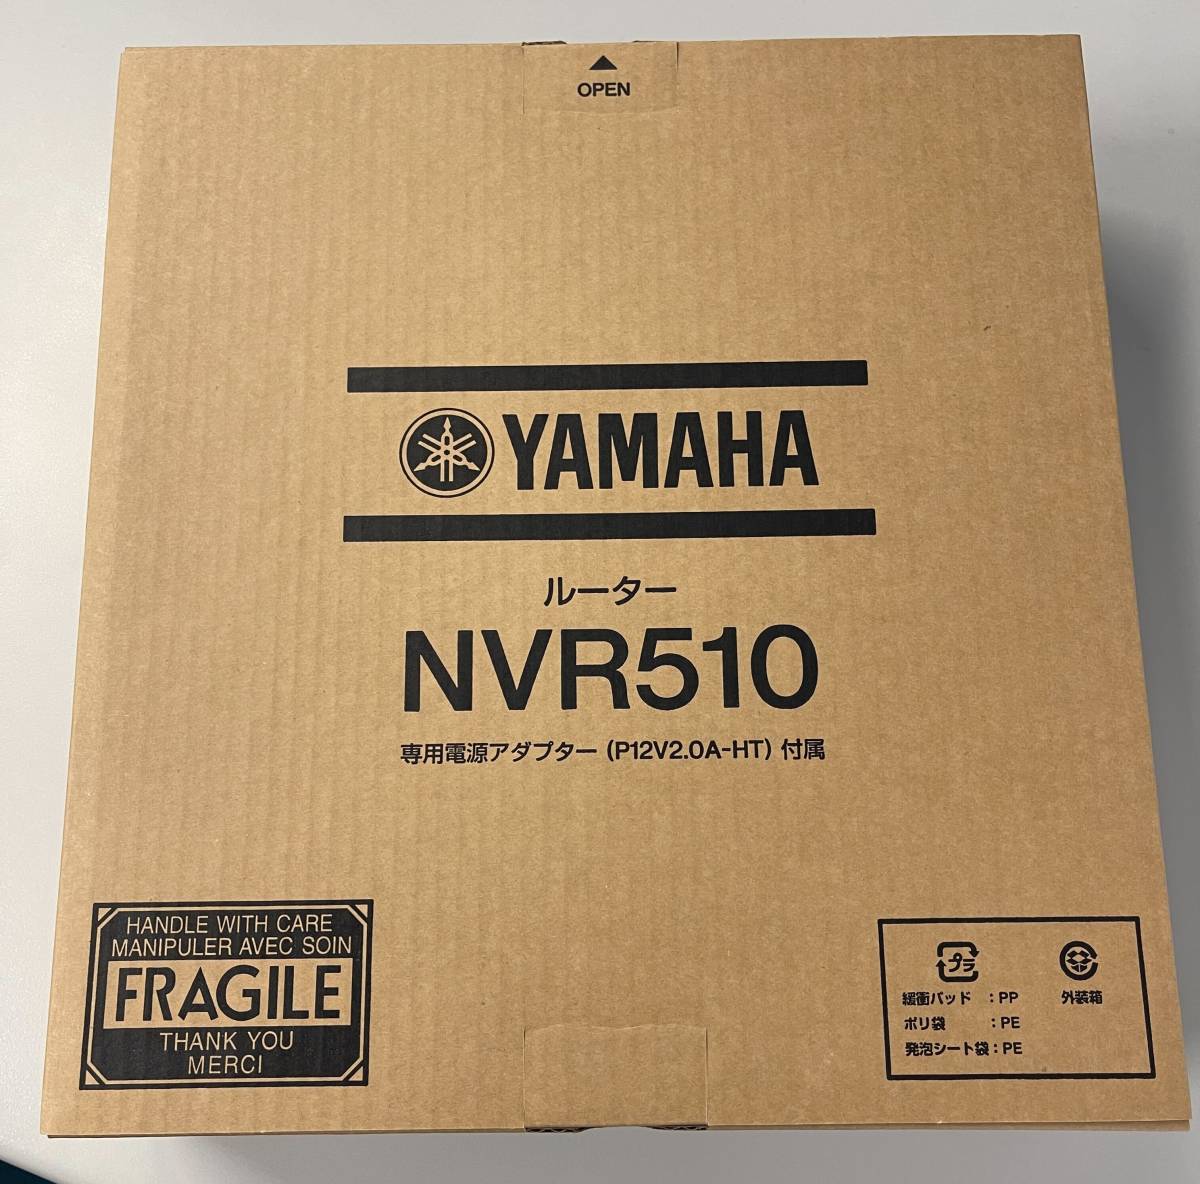  ヤマハ ギガアクセスVoIPルーター NVR510 2台セット